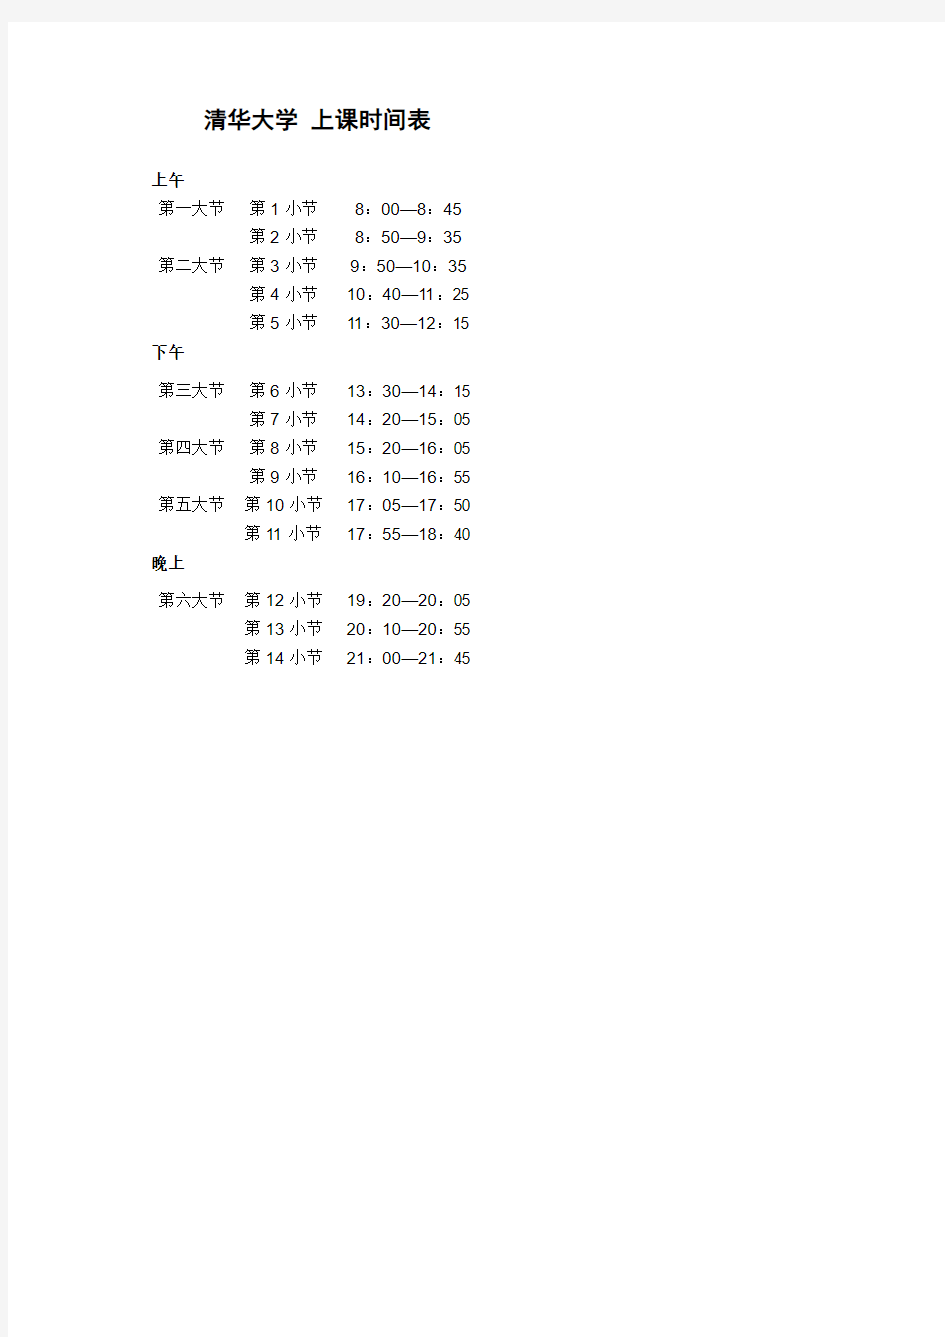 清华大学上课时间表